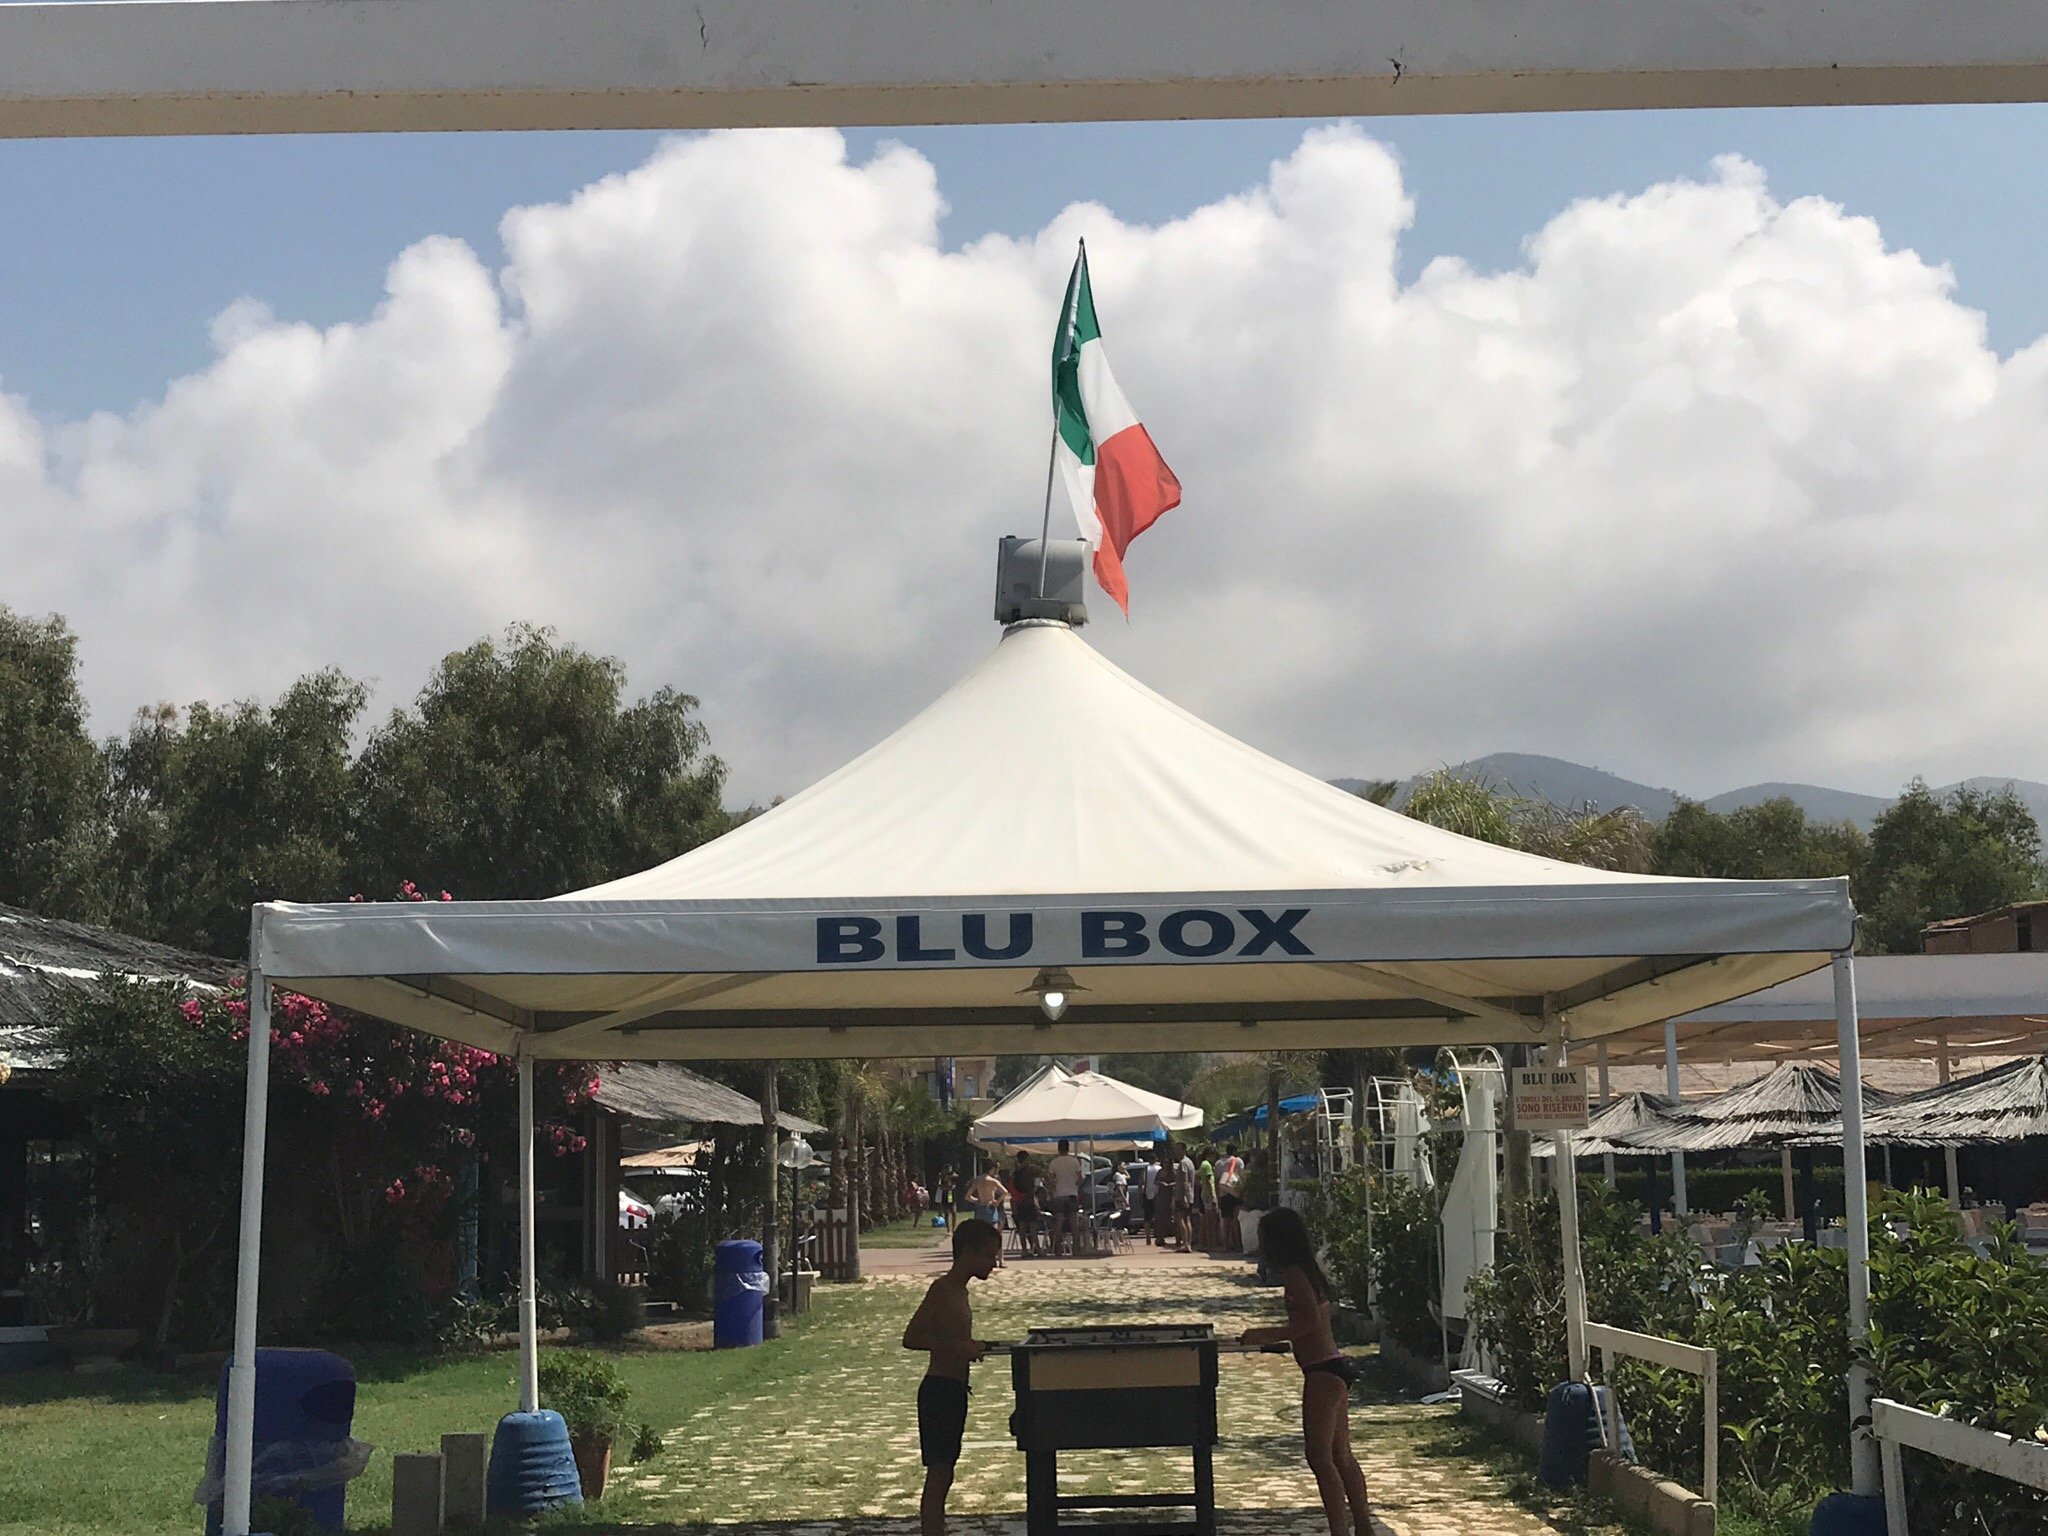 Lido Blu Box, Mondragone